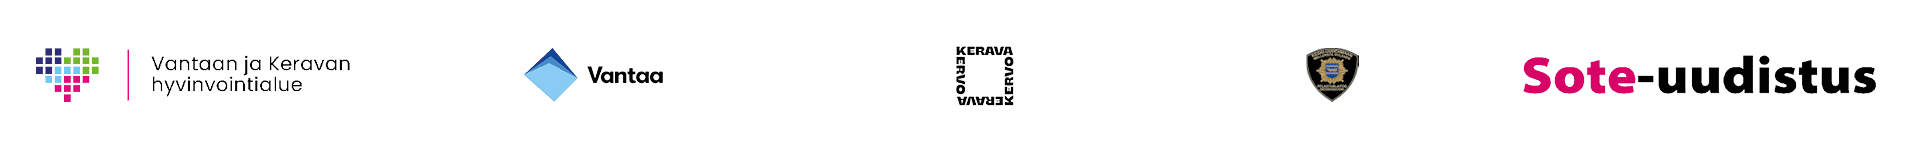 Vantaan ja Keravan hyvinvointialueen, Vantaan, Keravan, Keski-Uudenmaan pelastuslaitoksen ja sote-uudistuksen logot